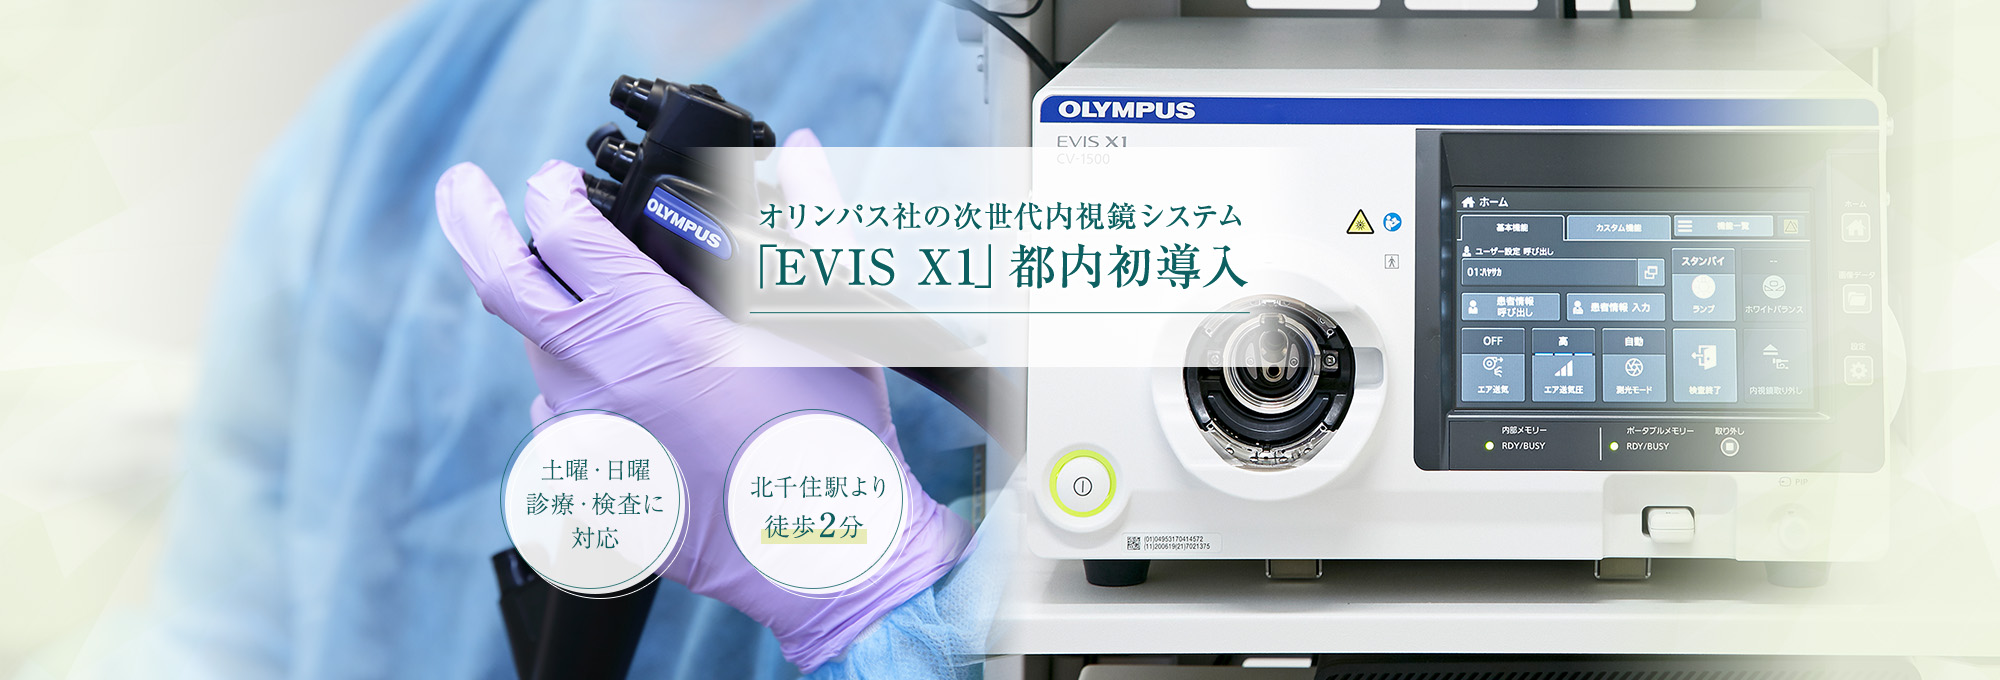 オリンパス社の次世代内視鏡システム「EVIS X1」都内初導入